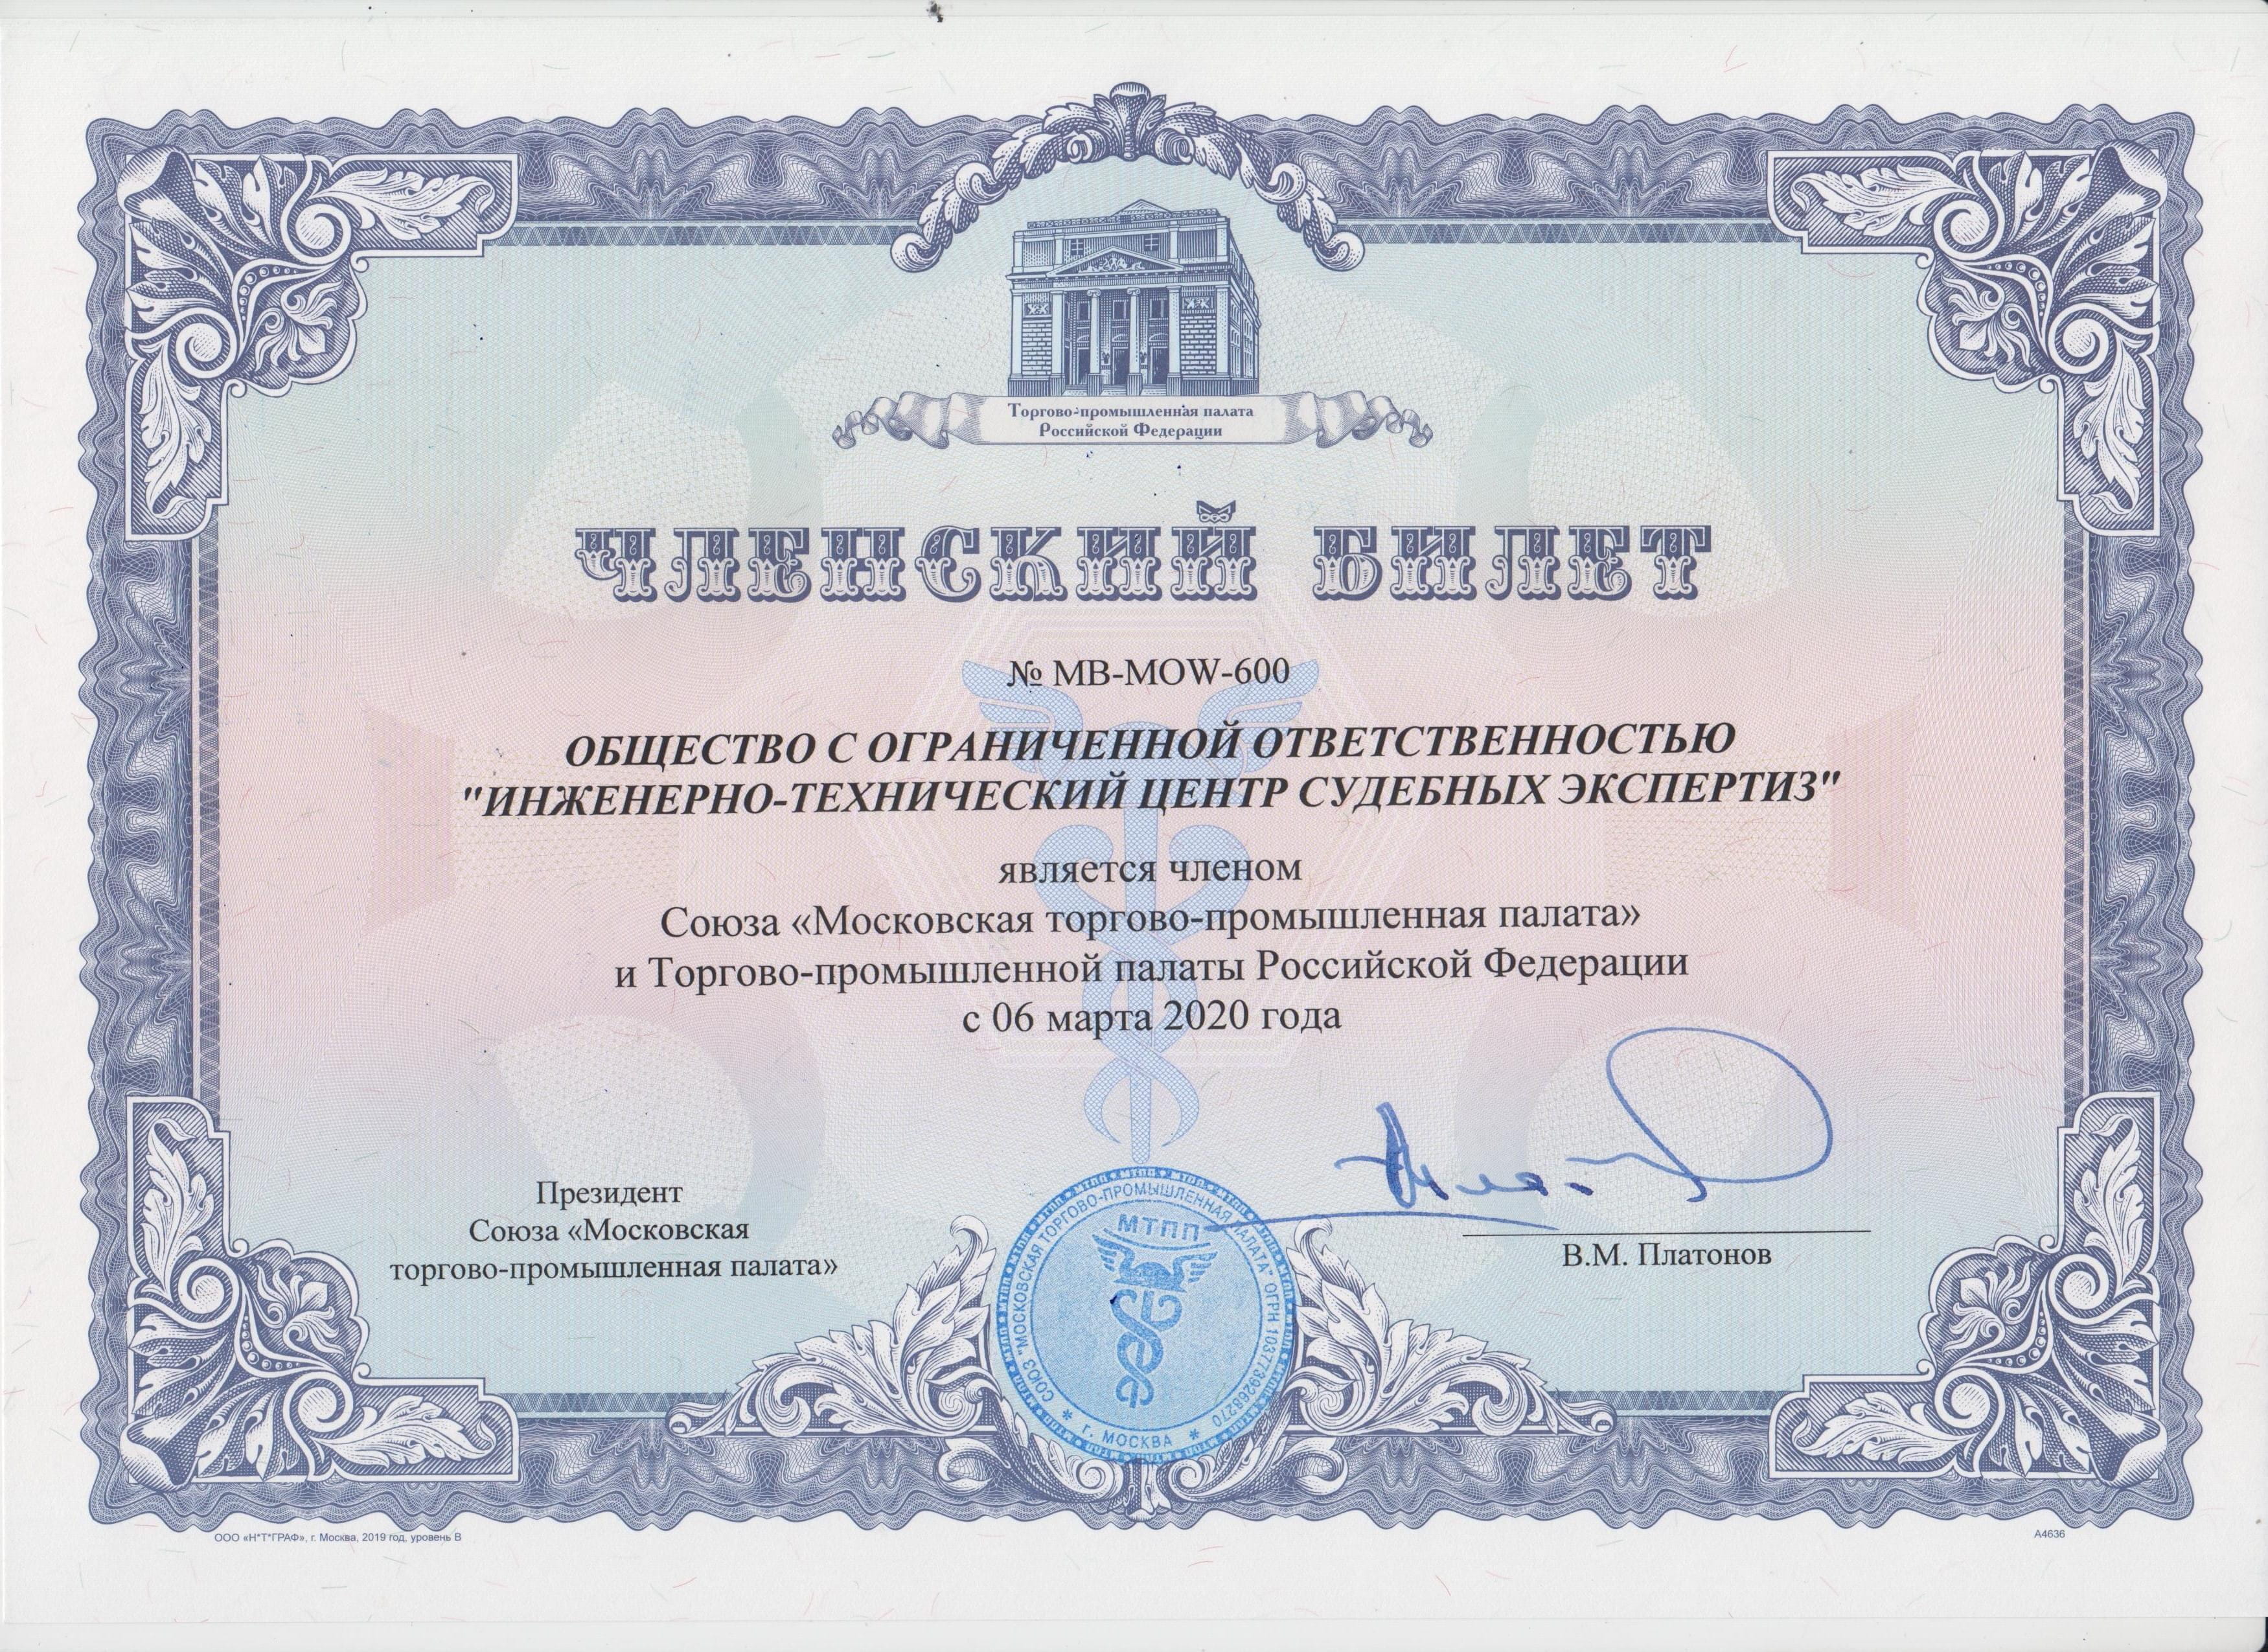 членскийи билет ИТЦСЭ в Московской торгово-промышленной палате